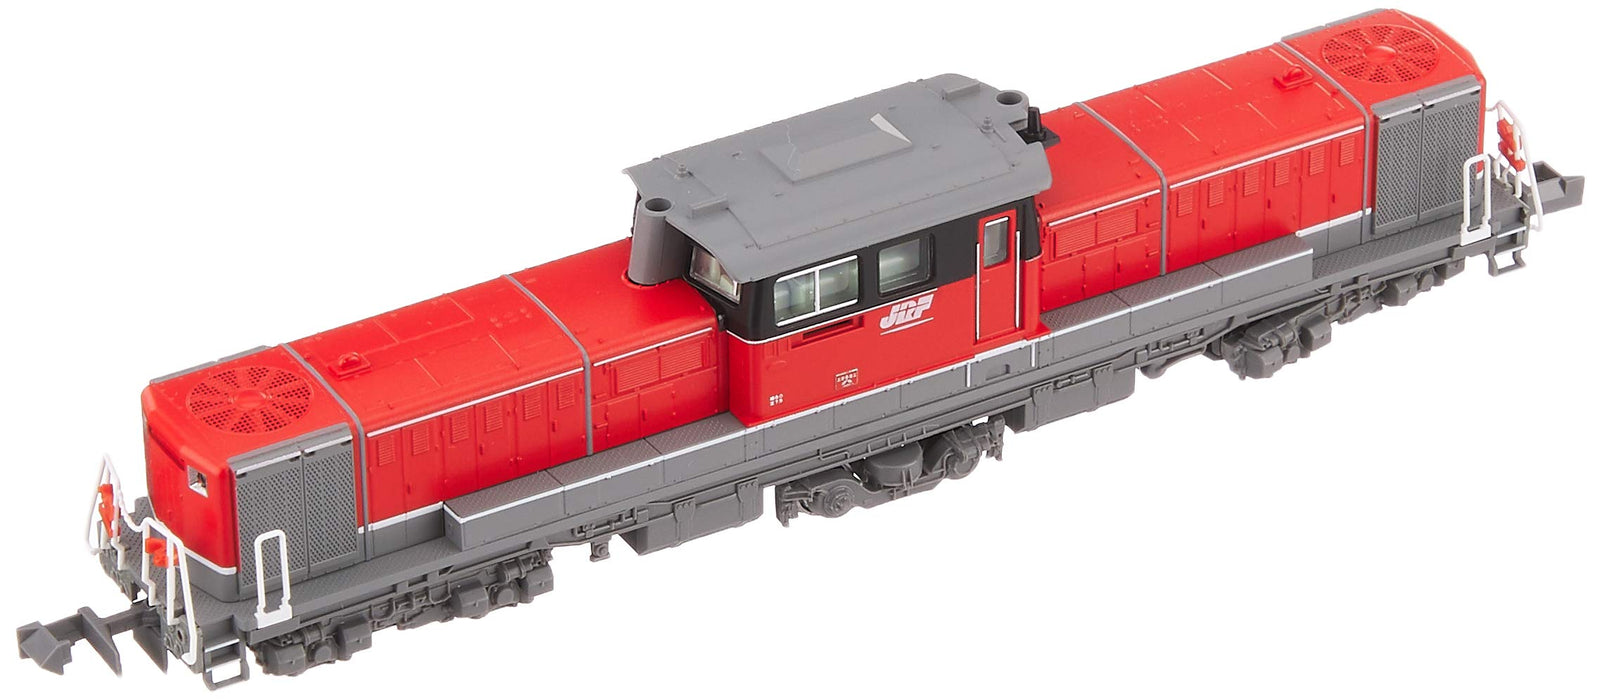 Kato N Gauge DD51 800 Aichi Engine Railway Model JR Freight Color Locomotive 7008-A